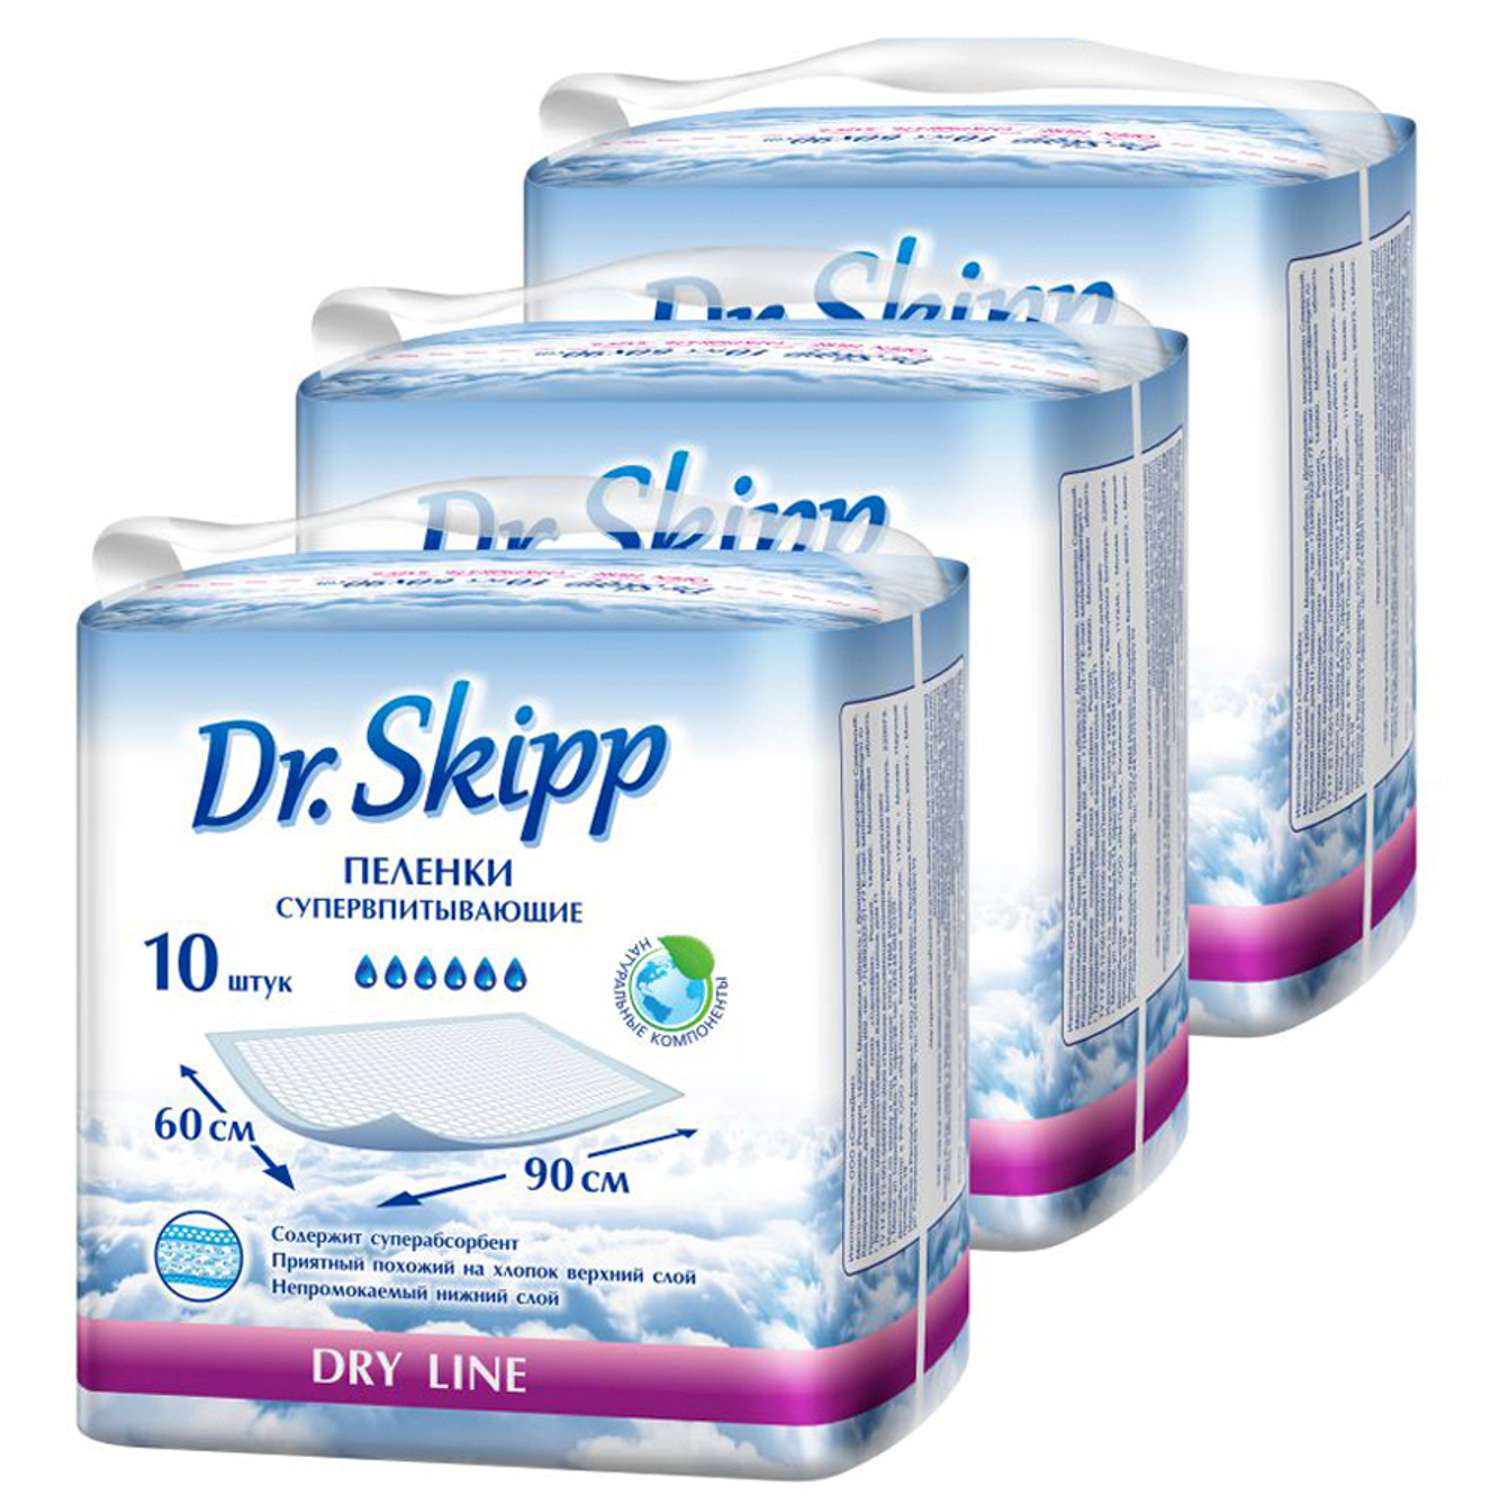 Пеленки впитывающие Dr.Skipp одноразовые 60x90 3 упаковки по 10 шт 8074 - фото 1